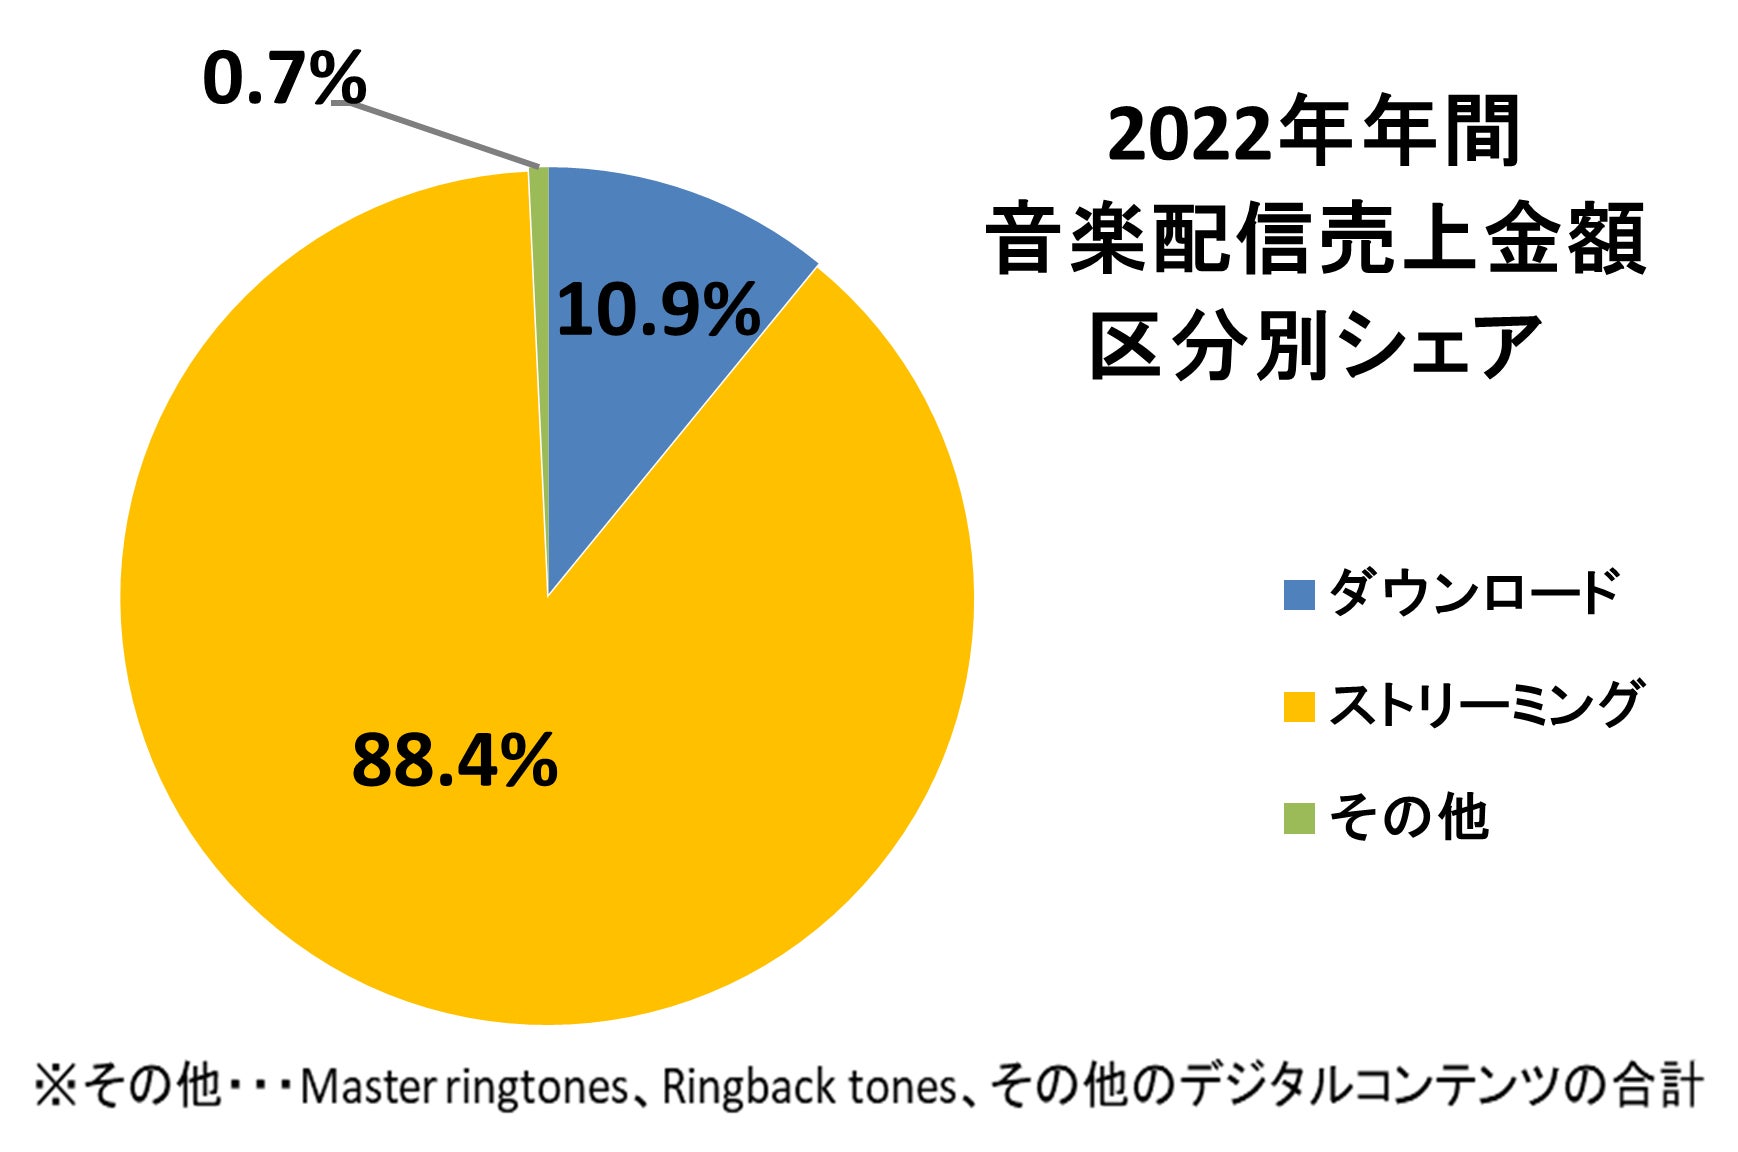 2022年年間音楽配信売上1,050億円～9年連続成長、1,000億円突破で過去最高売上を達成